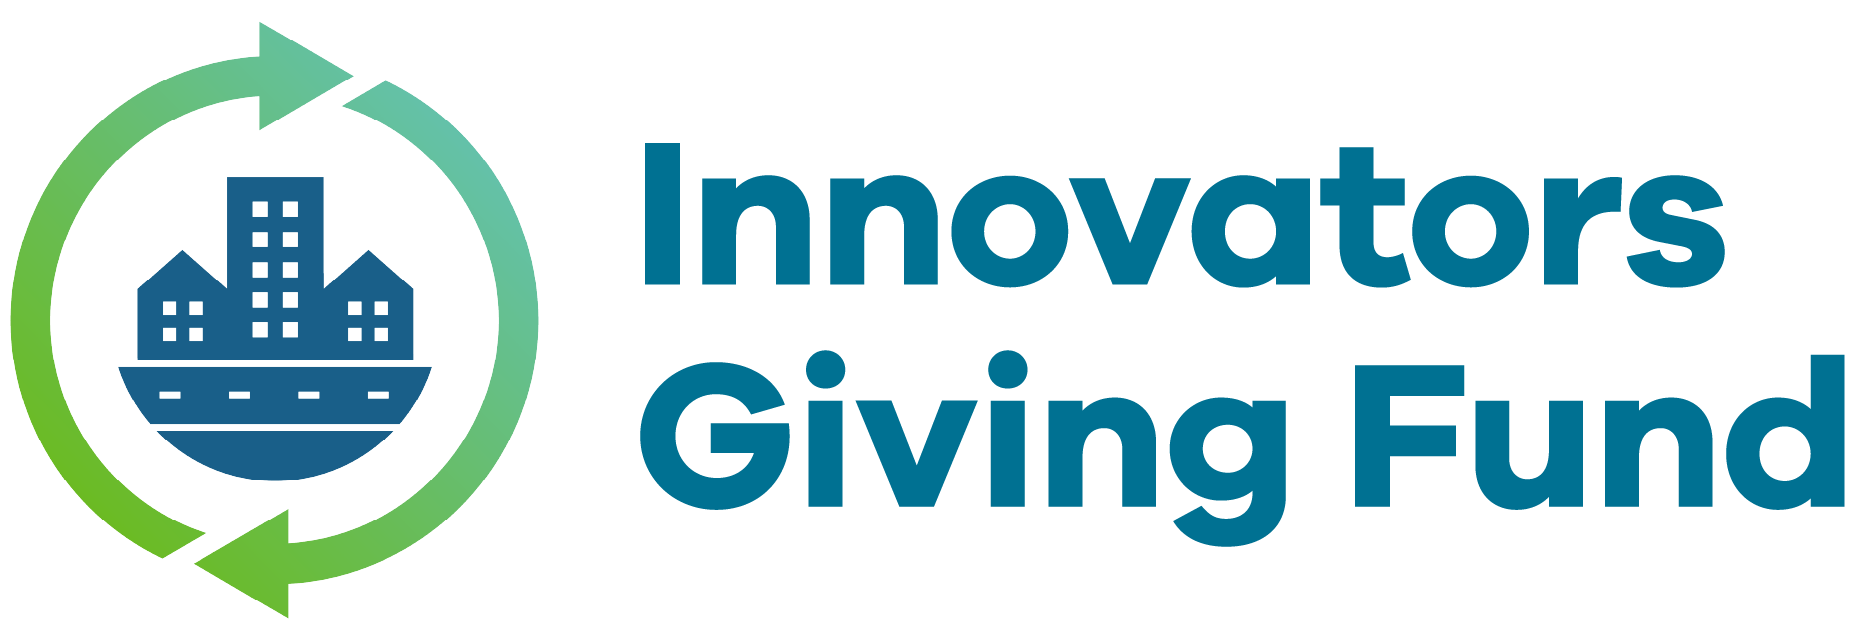 Innovators-Giveback-Logo-Colour_landscape-01.png